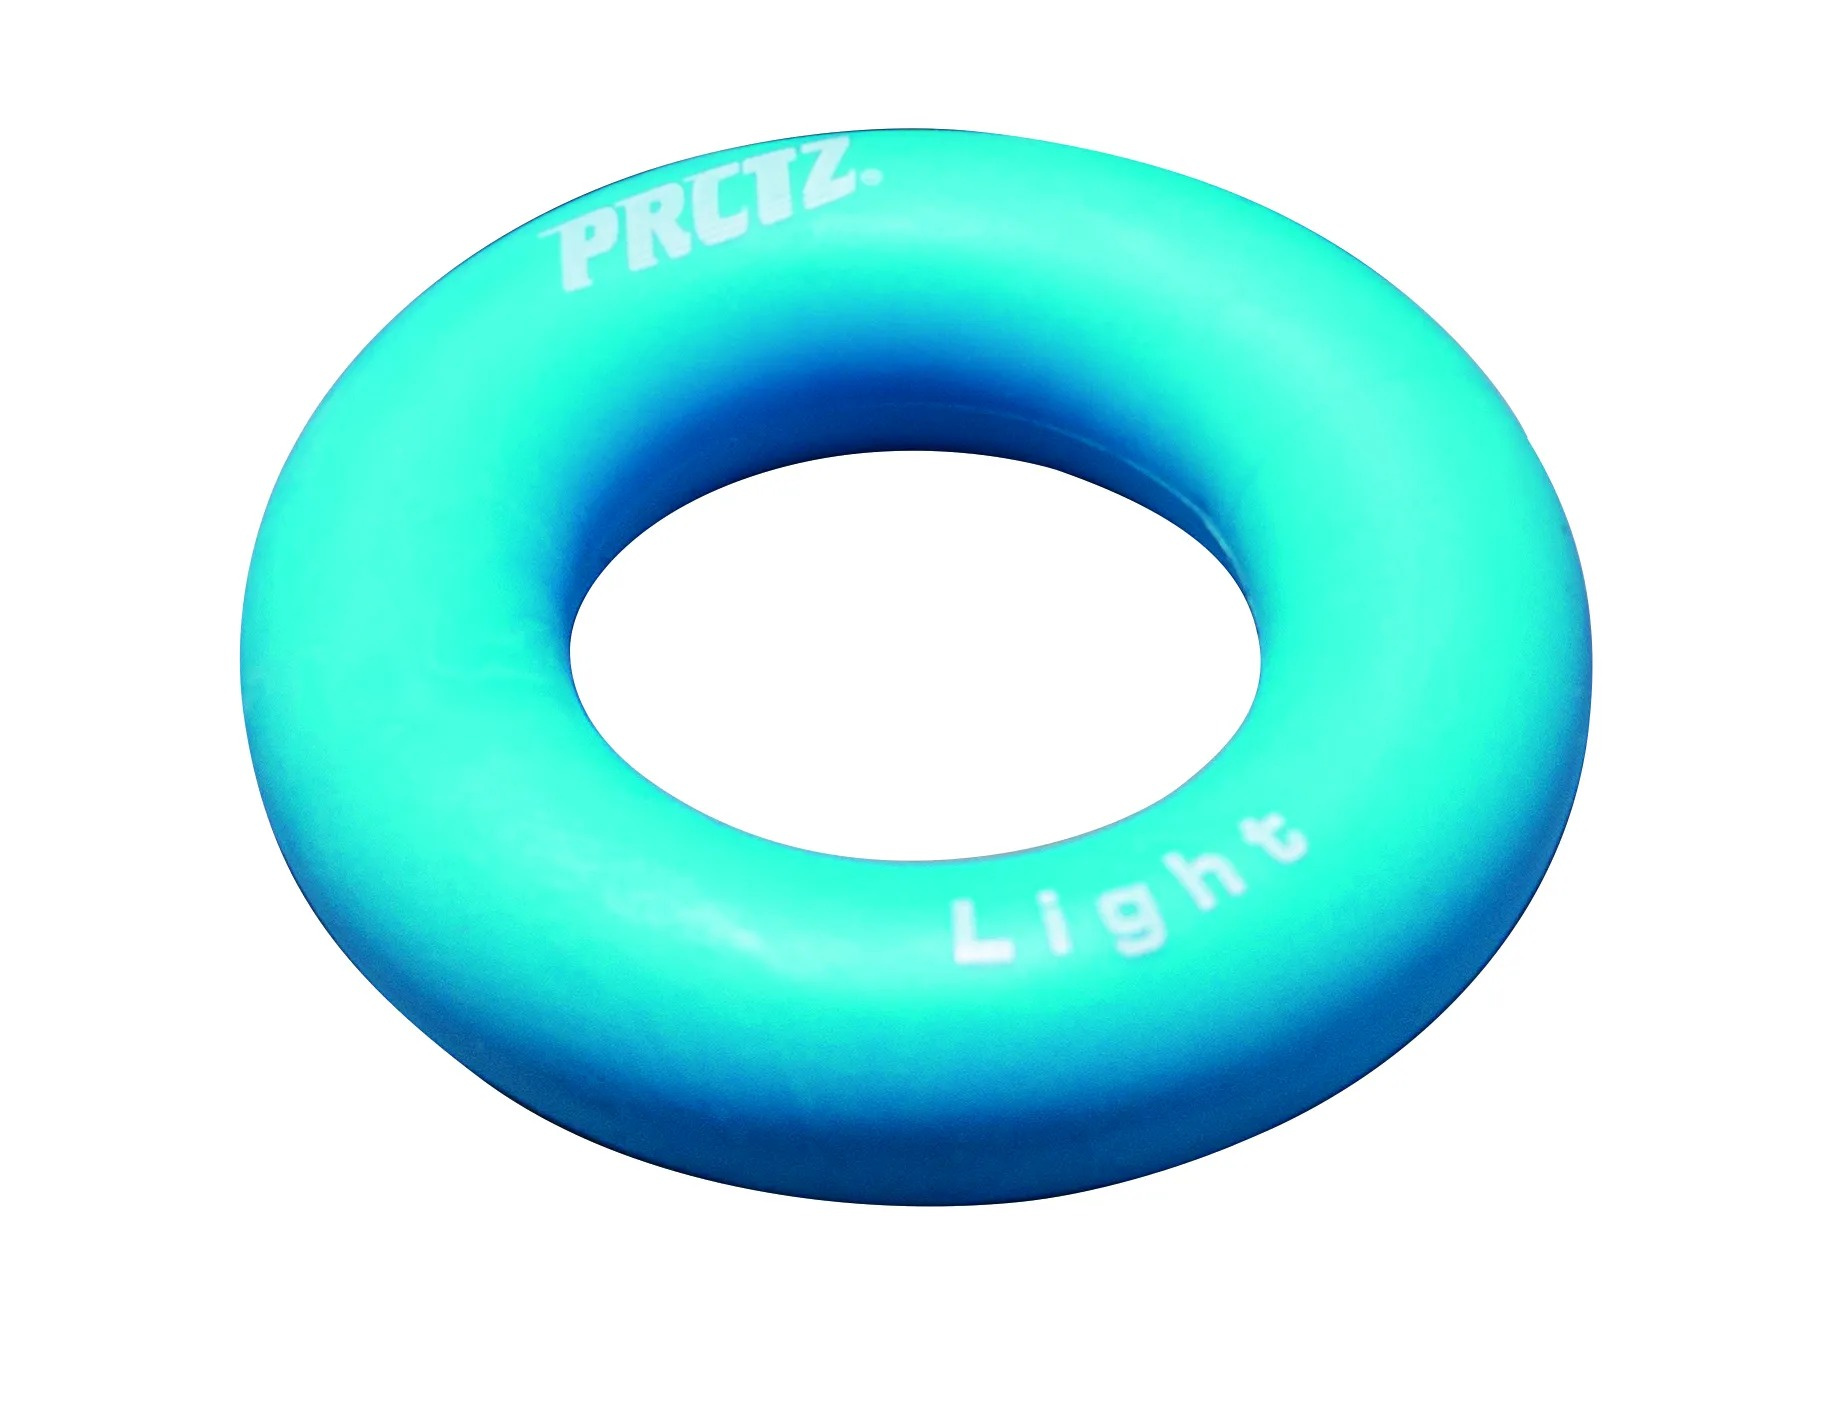 Эспандер-кольцо PRCTZ Power Gripping ring Light, слабое сопротивление